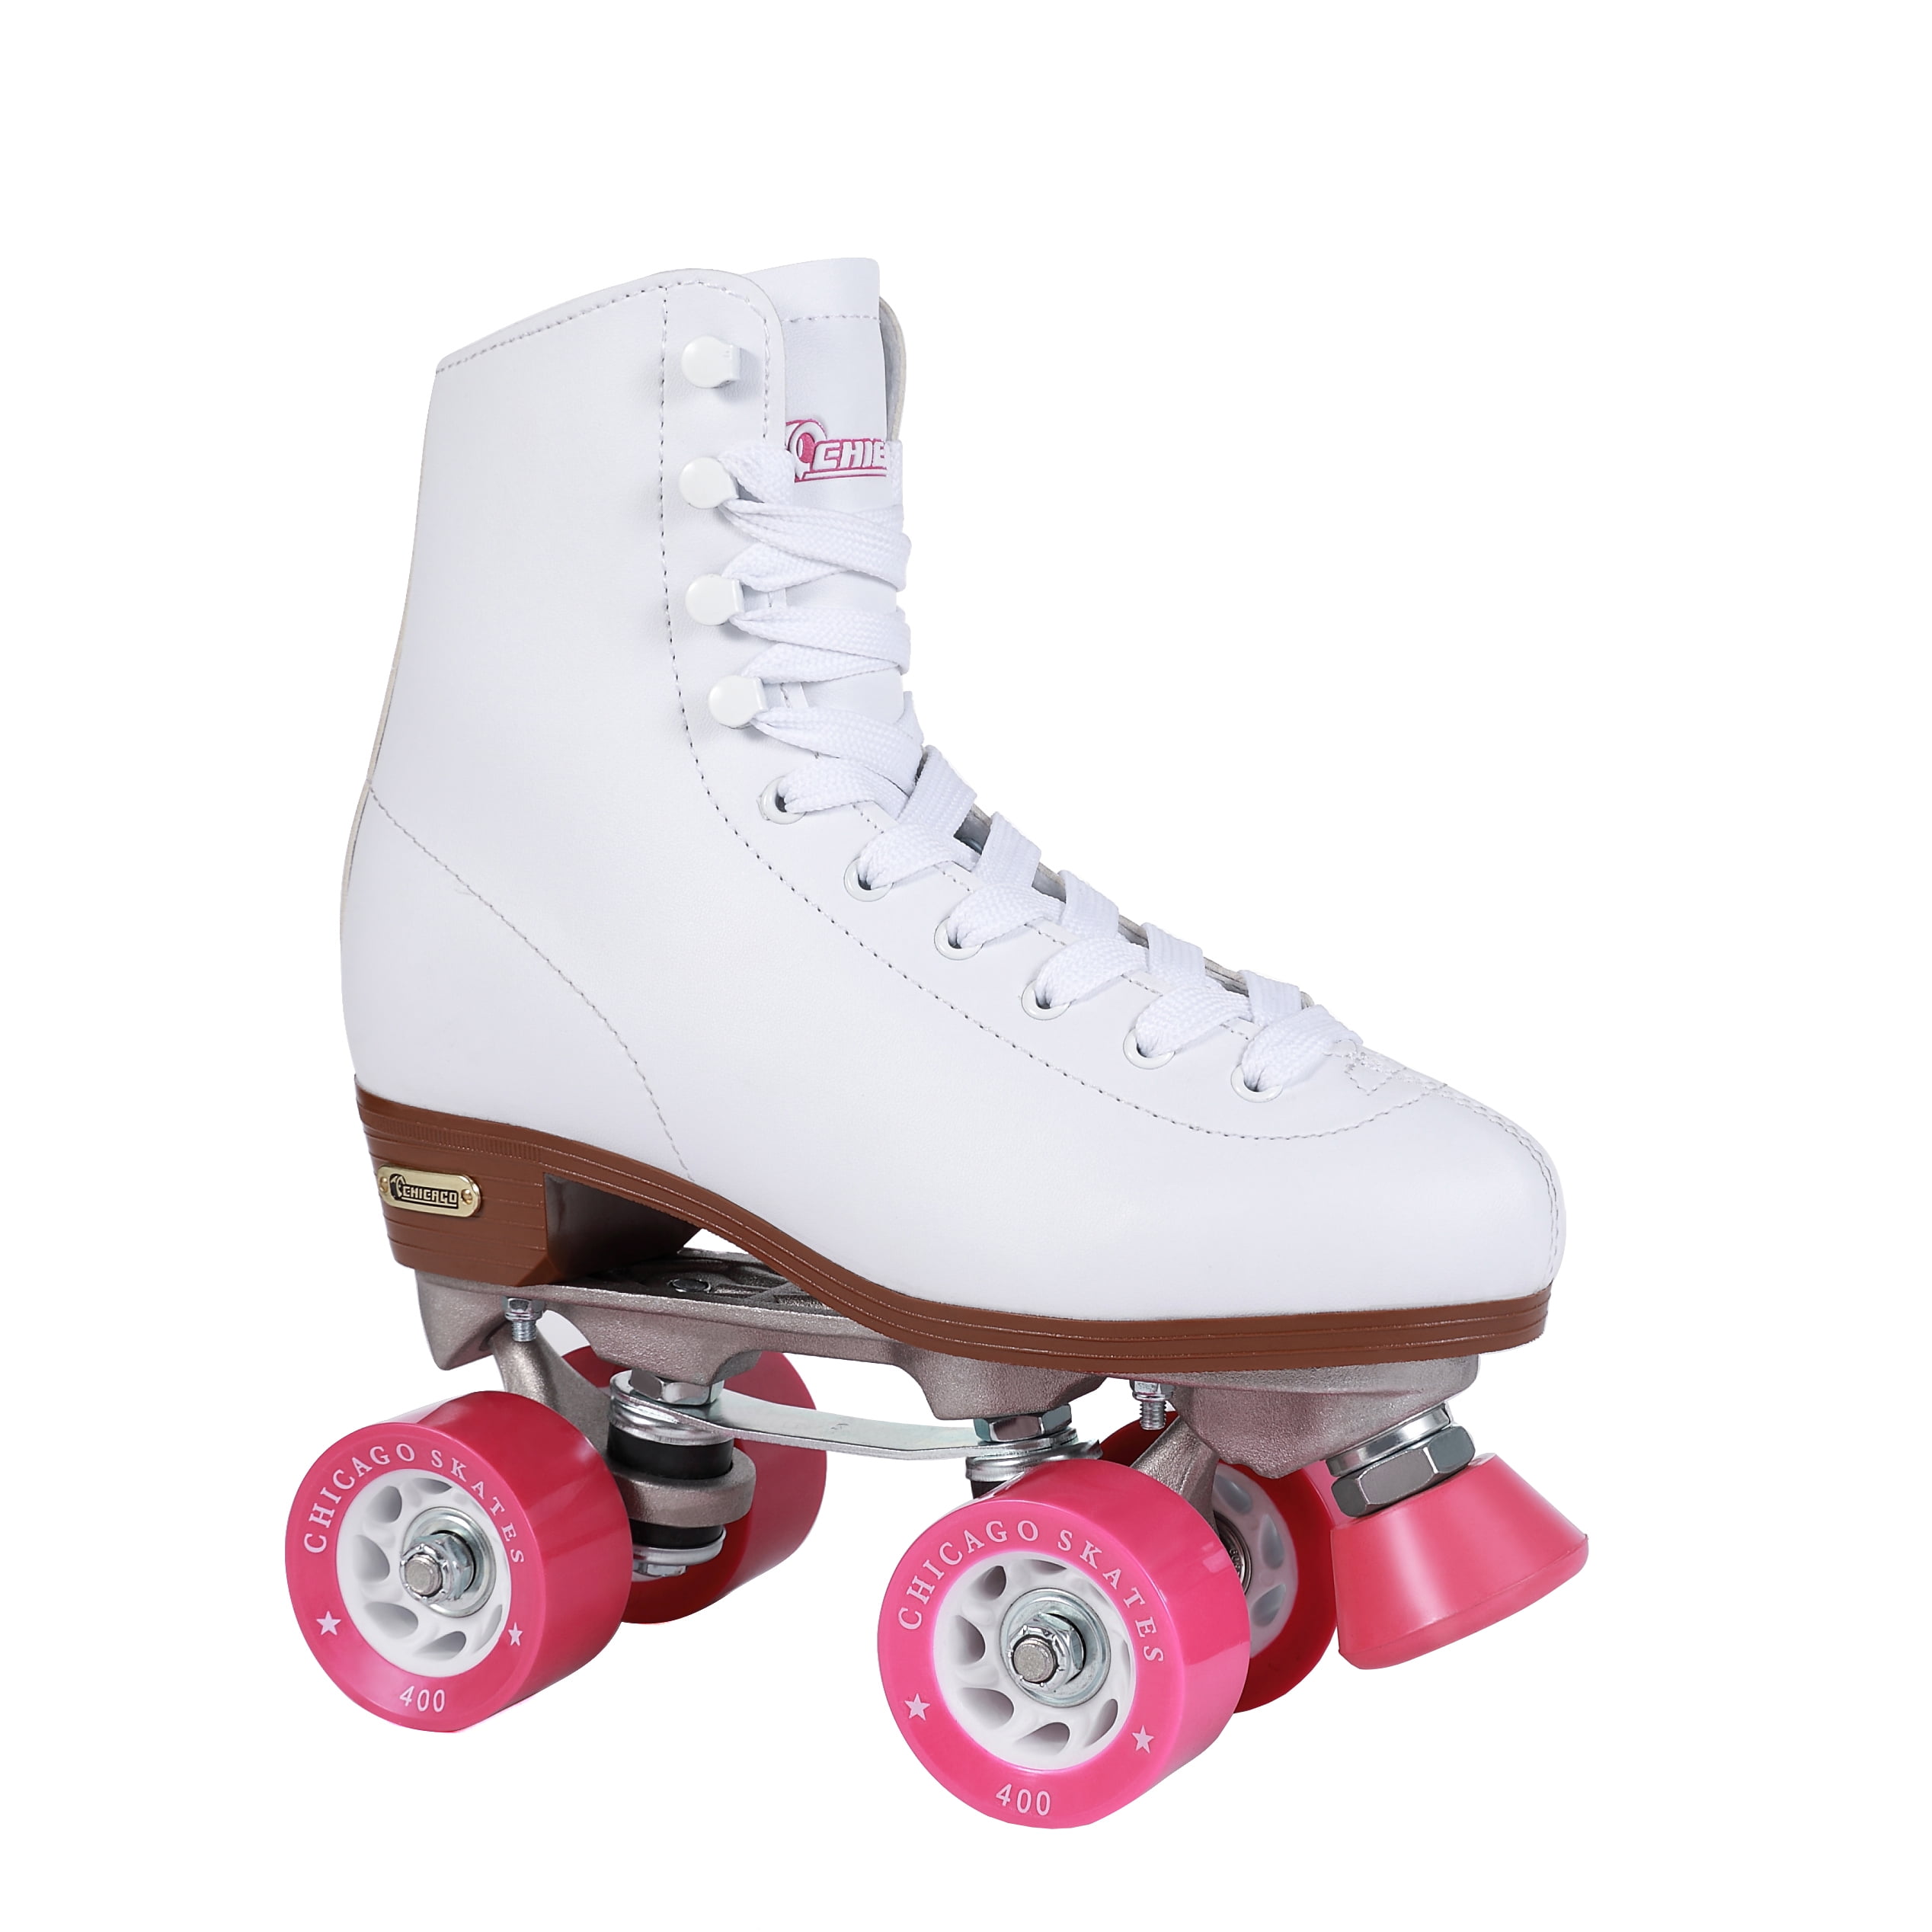 Chicago Skate 400 White Quad Roller Skates Women's Size 5 Girls size 3 